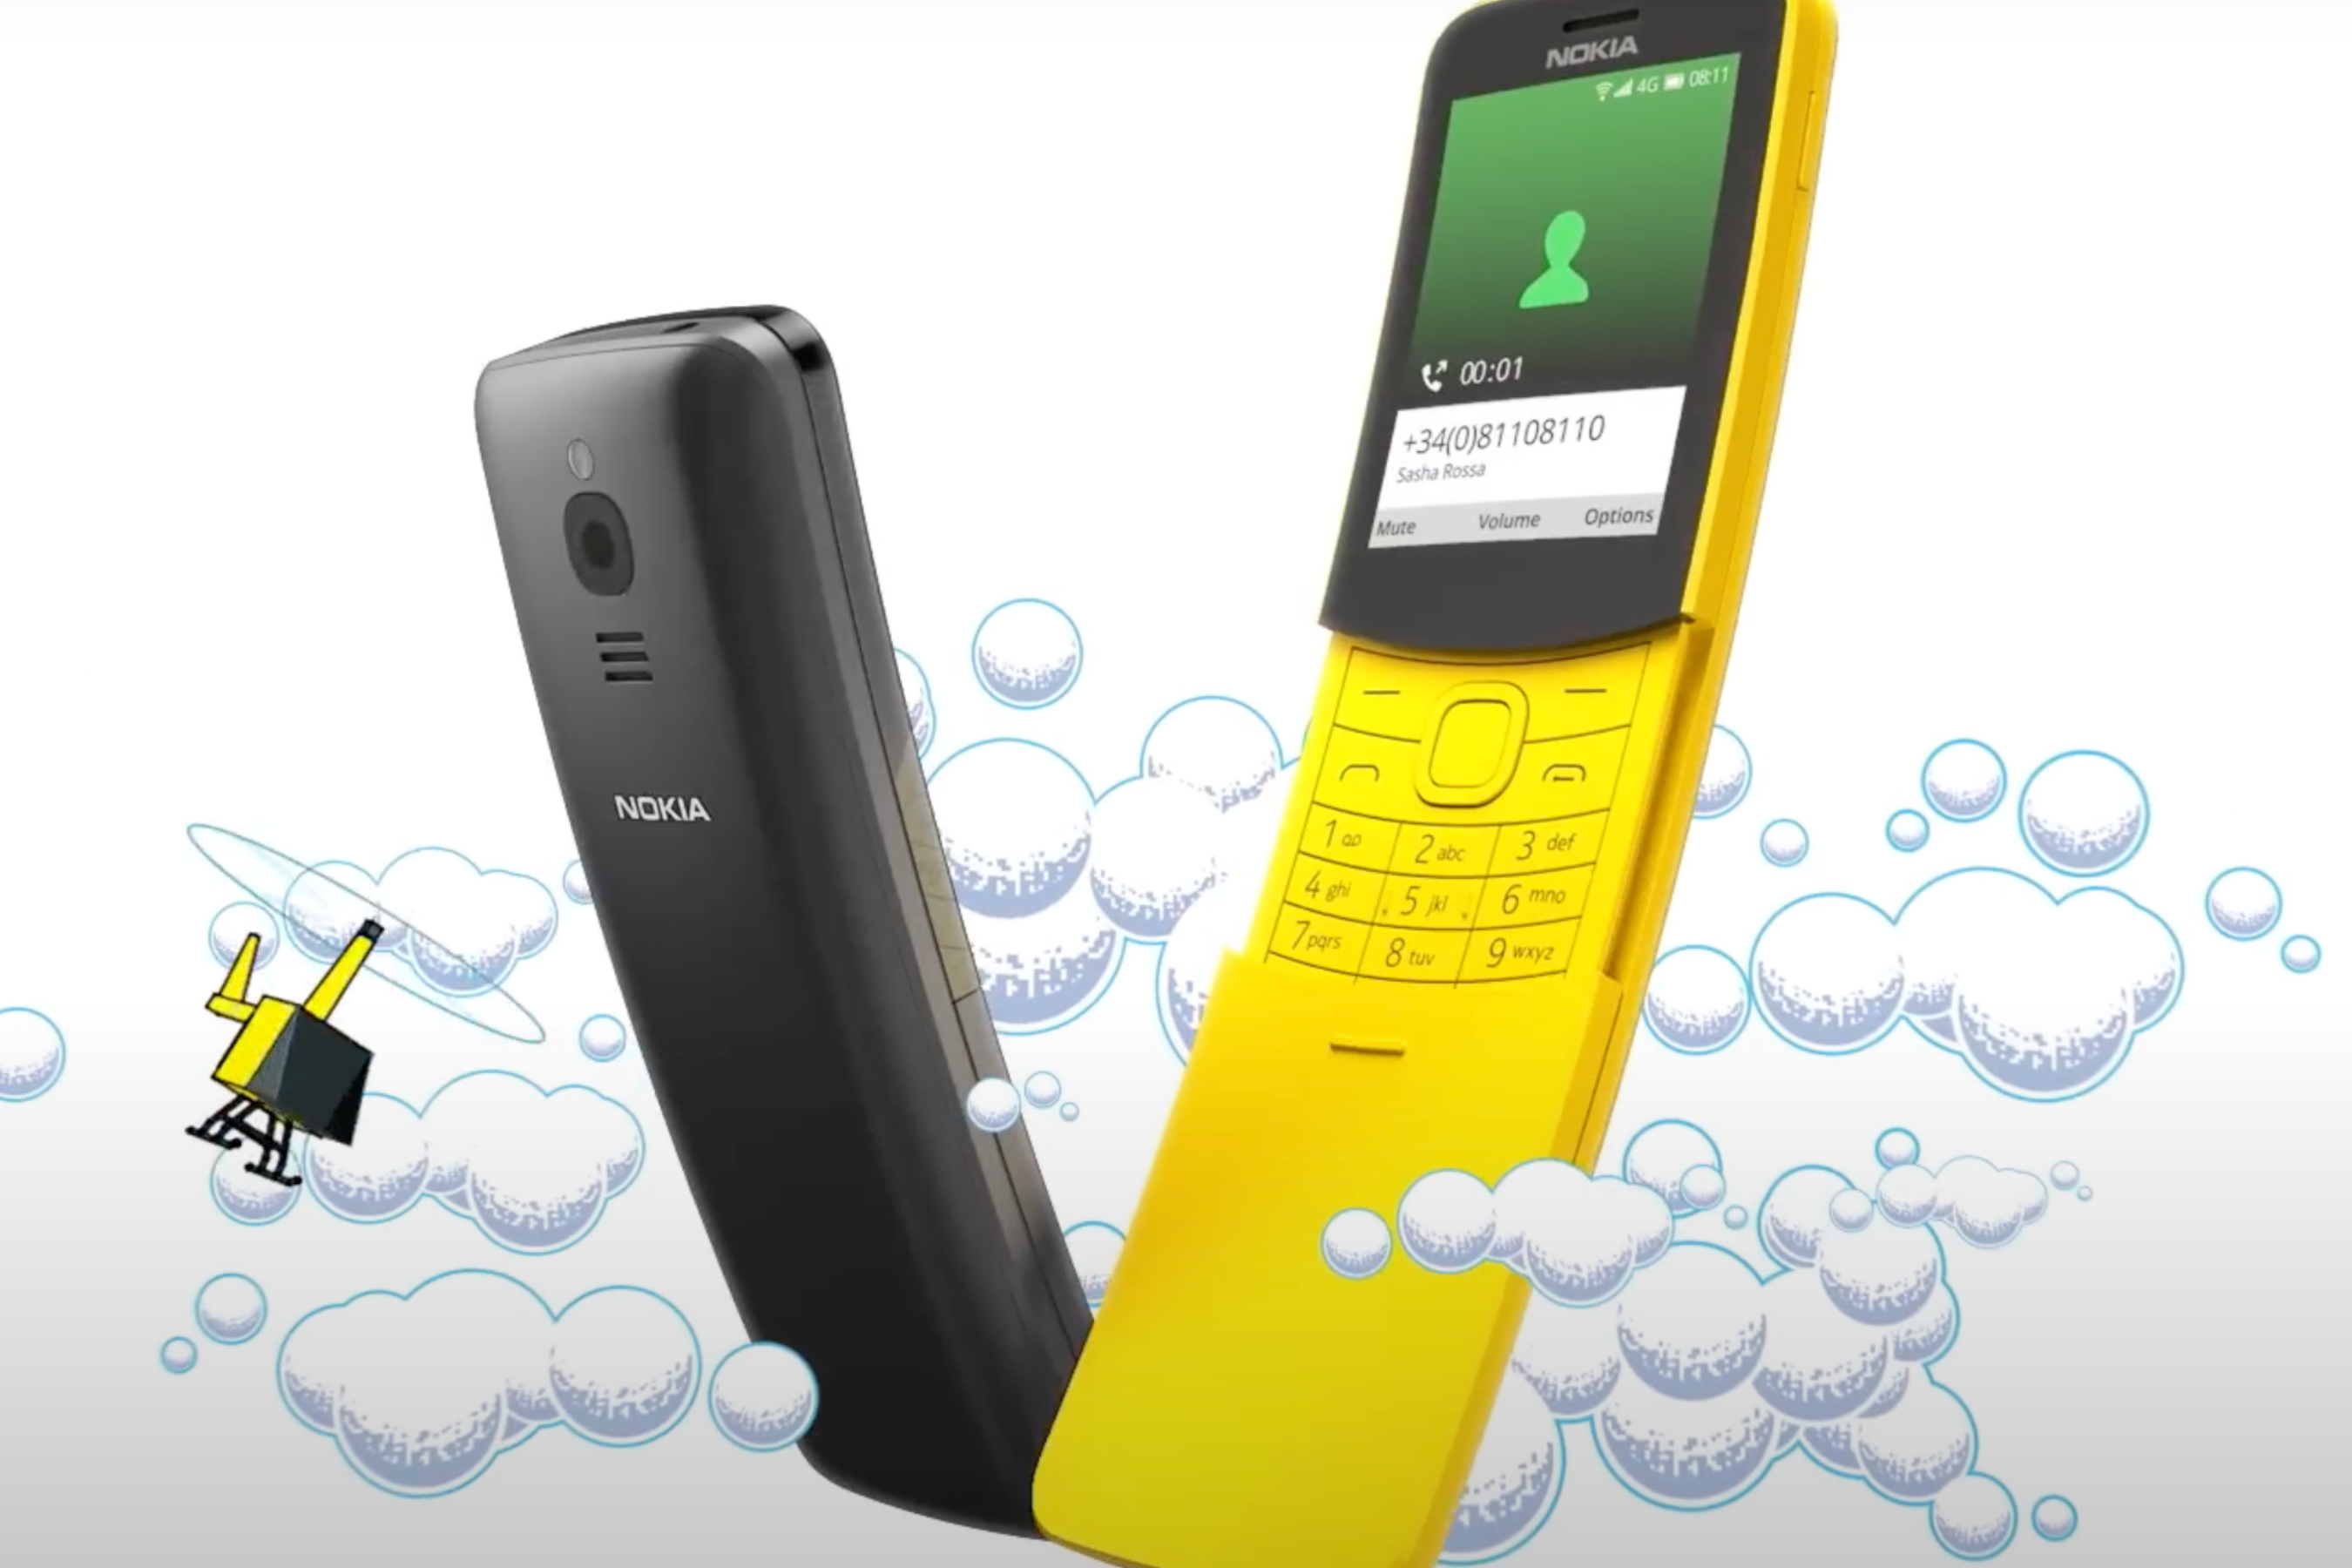 İlginç Nokia 8110 4G'yi hayal edin, ancak daha iyi özellikler ve yeteneklerle donatılmış. | Resim kredisi – Nokia - Sevgili Nokia, ben olsam bu özelliklere sahip aptal bir telefon yapardım